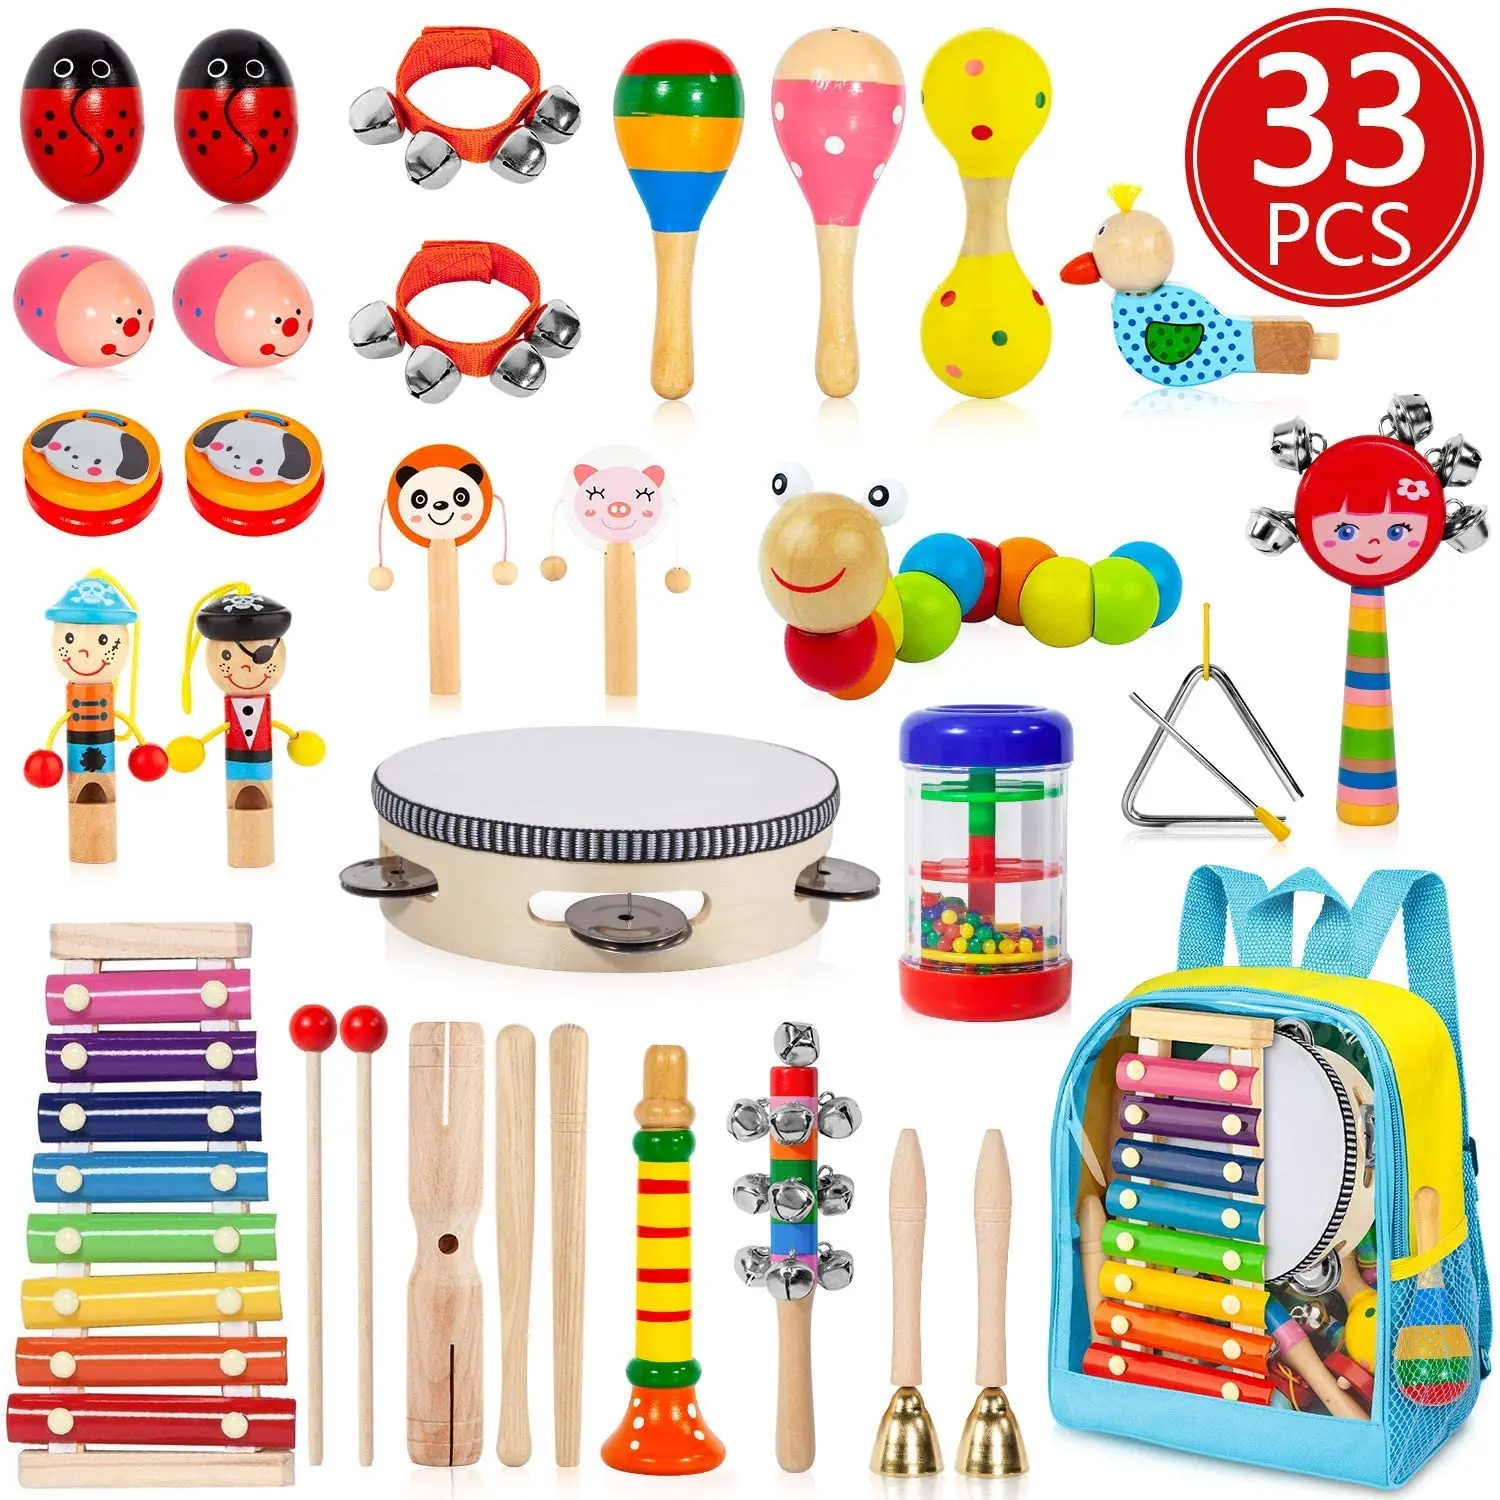 Детские музыкальные инструменты. Музыкальные инструменты игрушки. Музыкальные инструменты игрушки для детей. Набор музыкальных инструментов для детей. Детский музыкальный набор